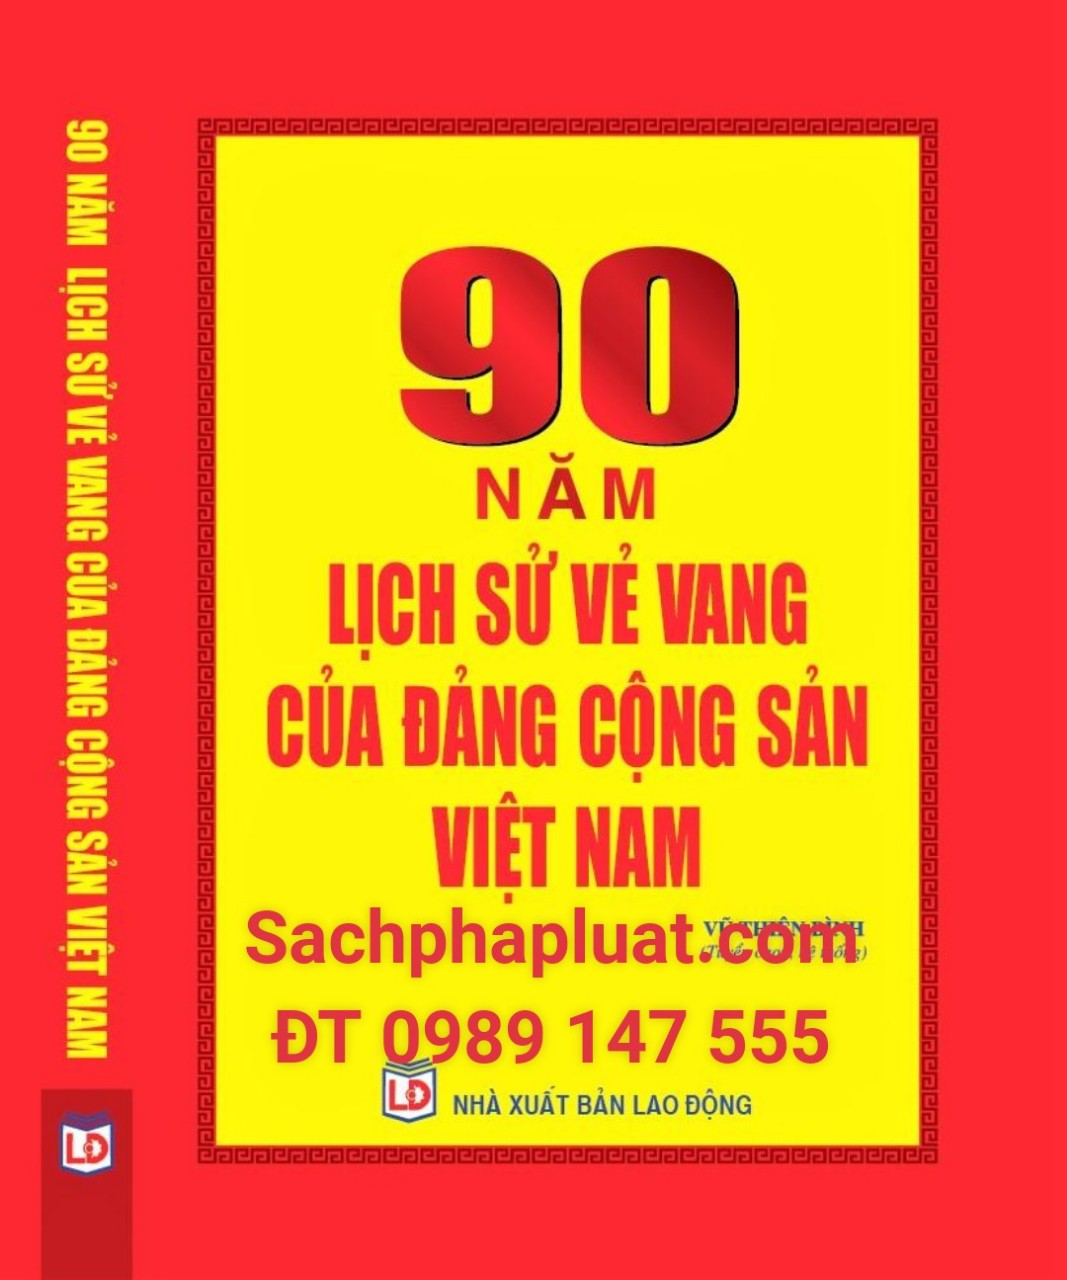 90 Năm lịch sử vẻ vang của Đảng công sản Việt Nam